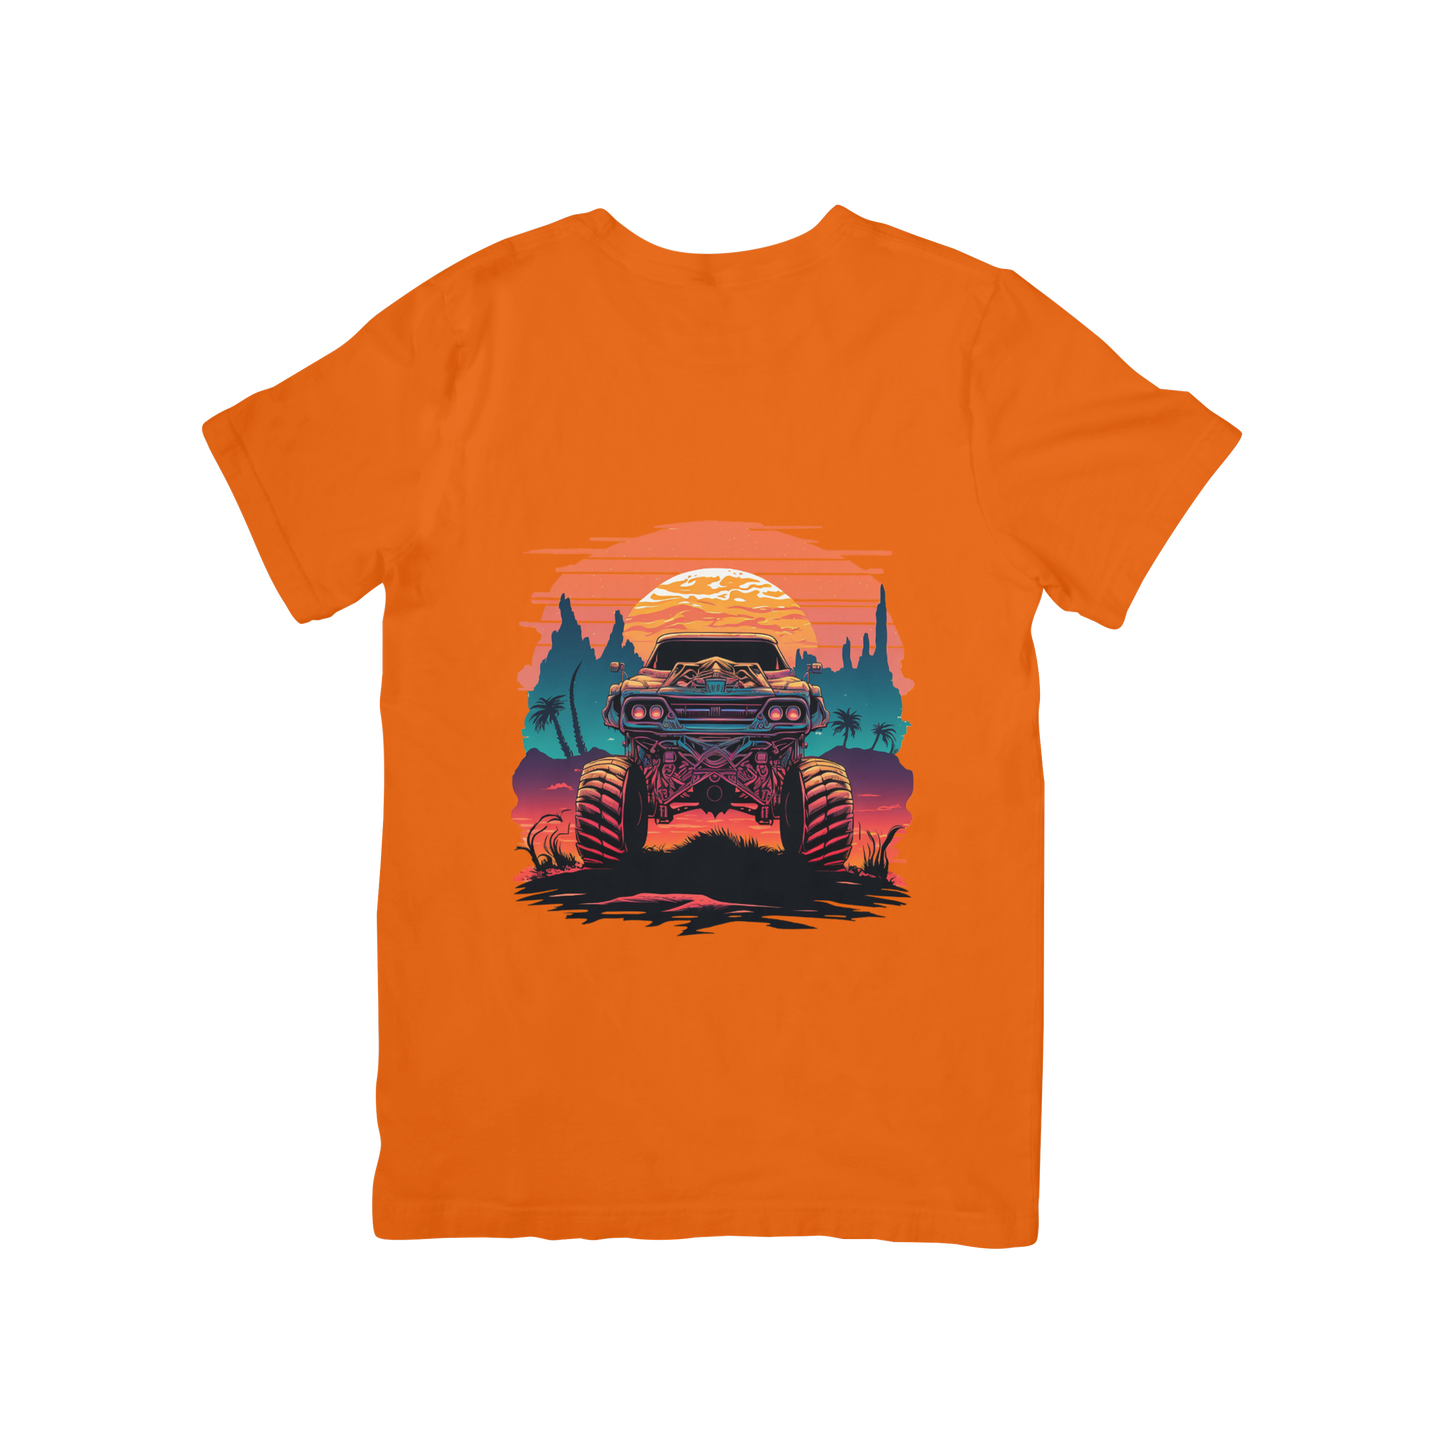 Truck Design T-shirt